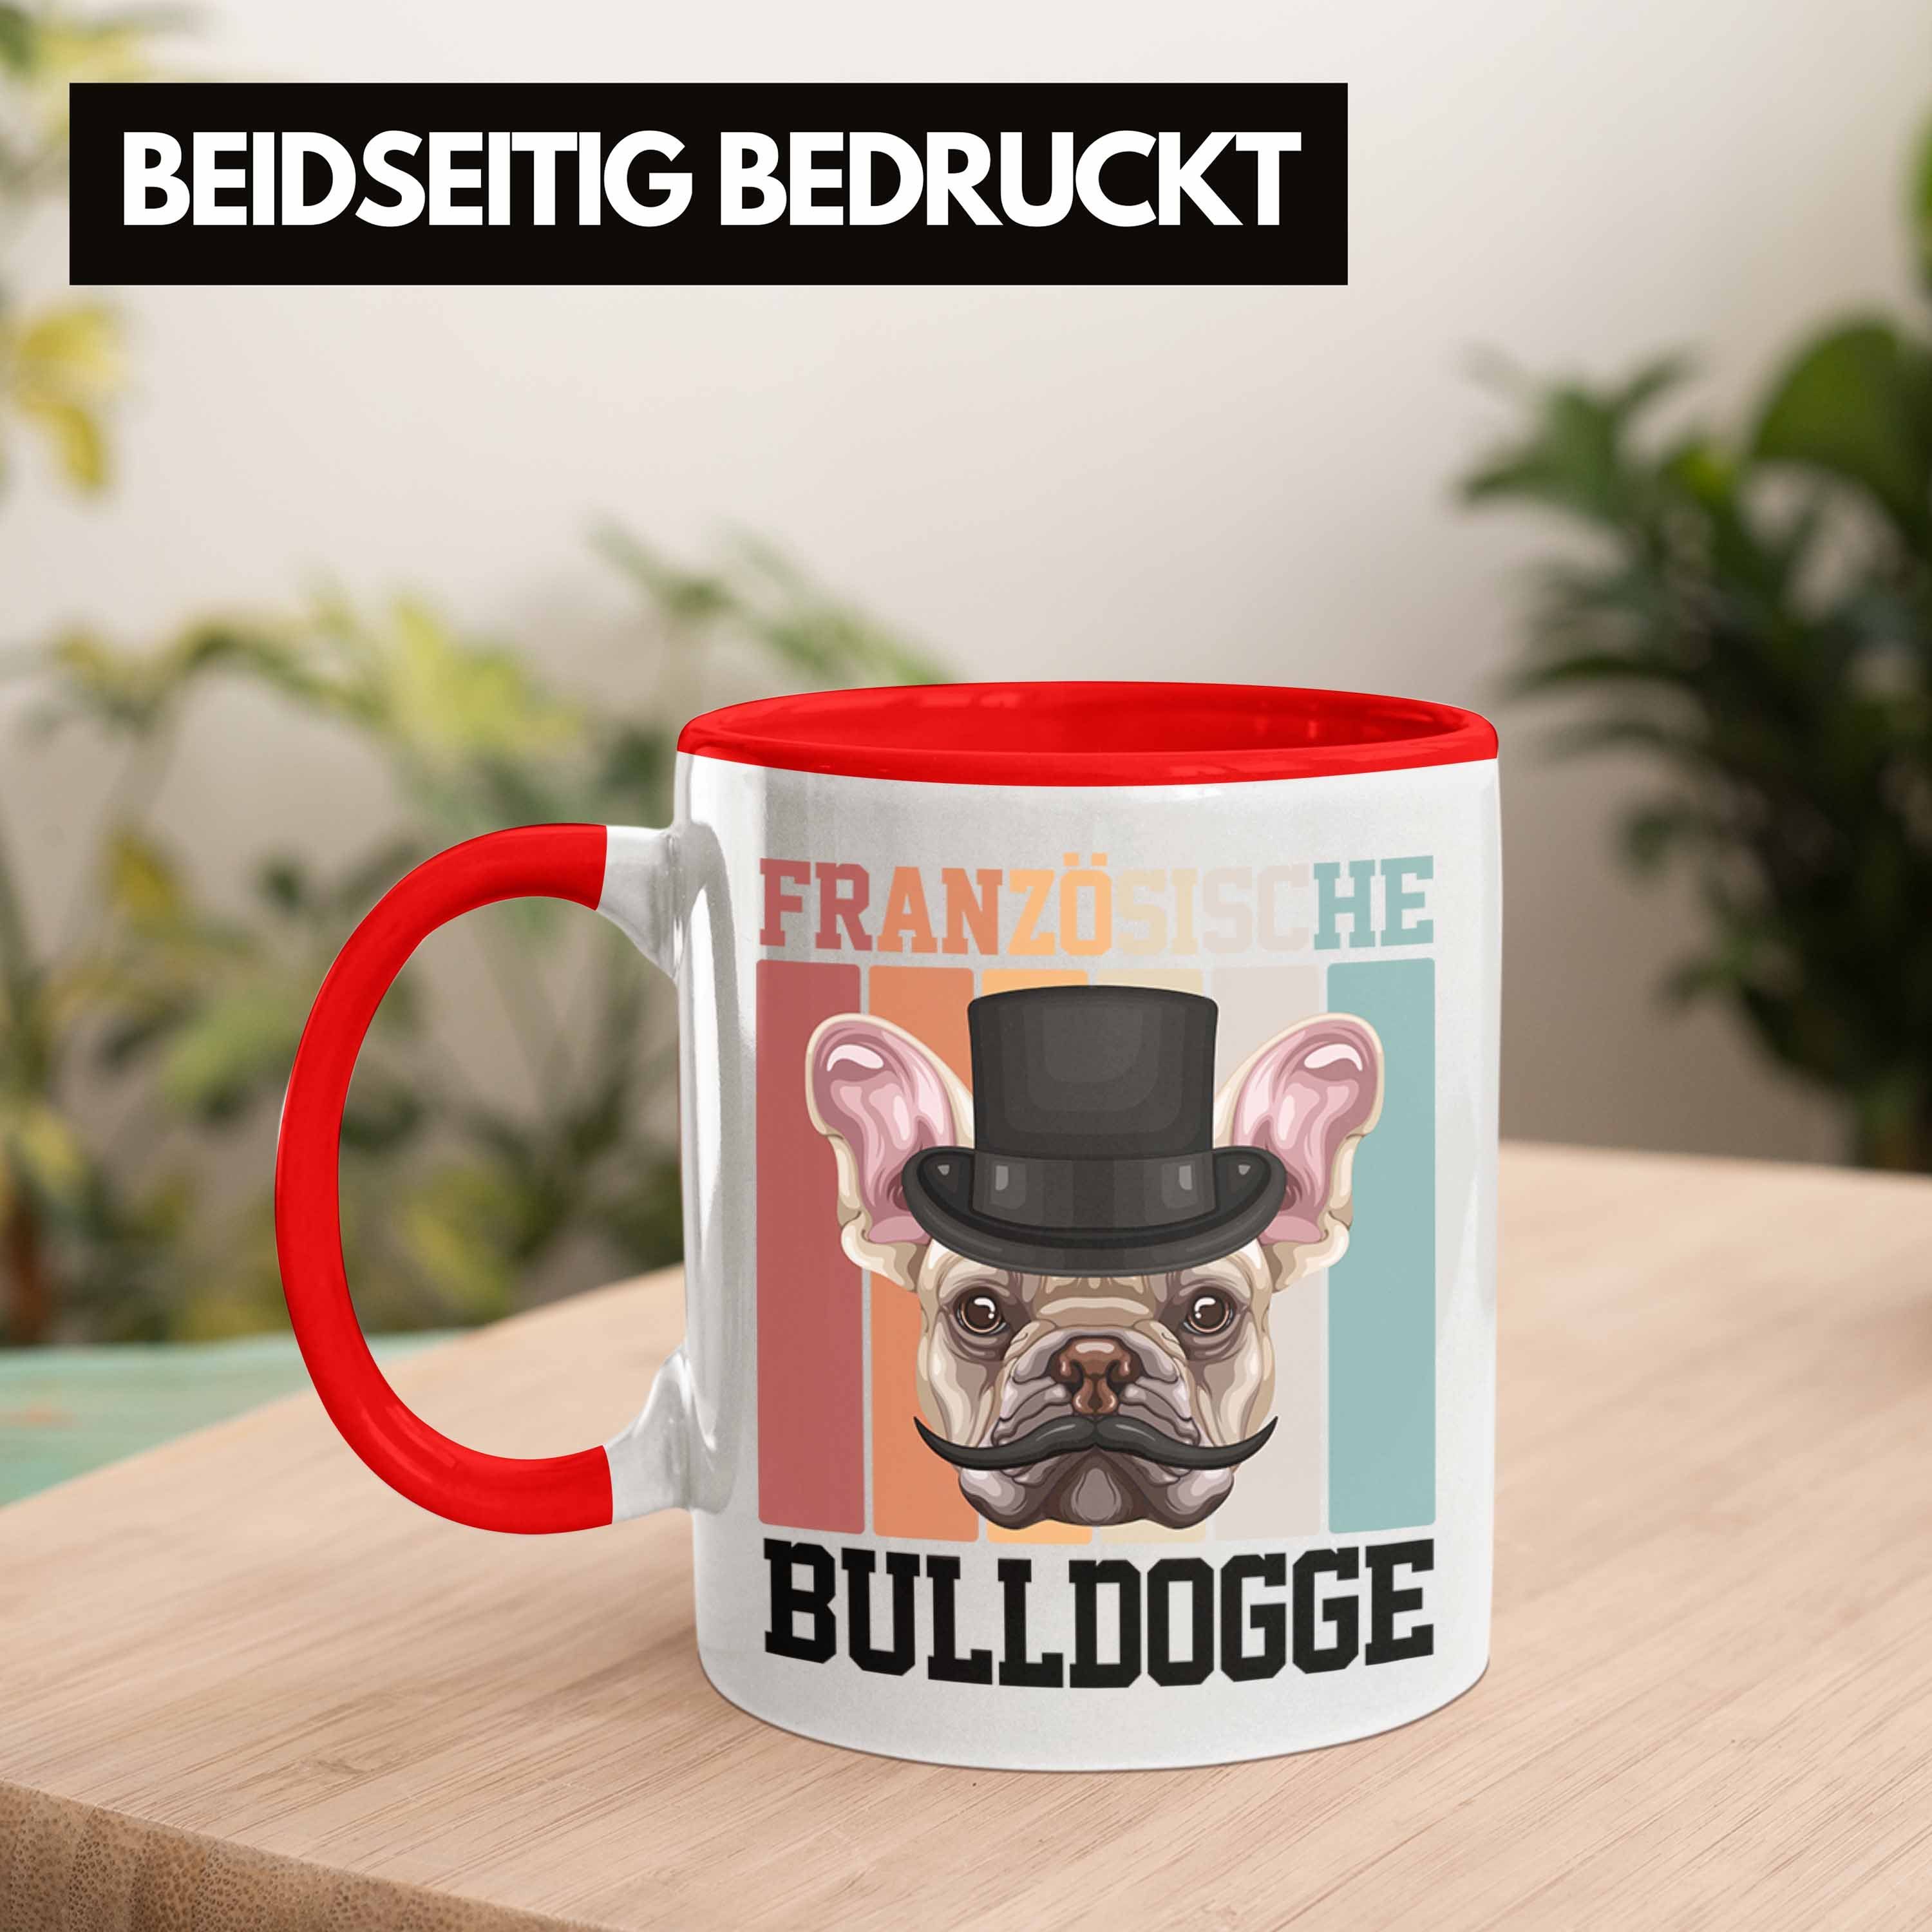 Trendation Tasse Lustiger Französische Spruch Besitzer Bulldogge Tasse Geschen Geschenk Rot